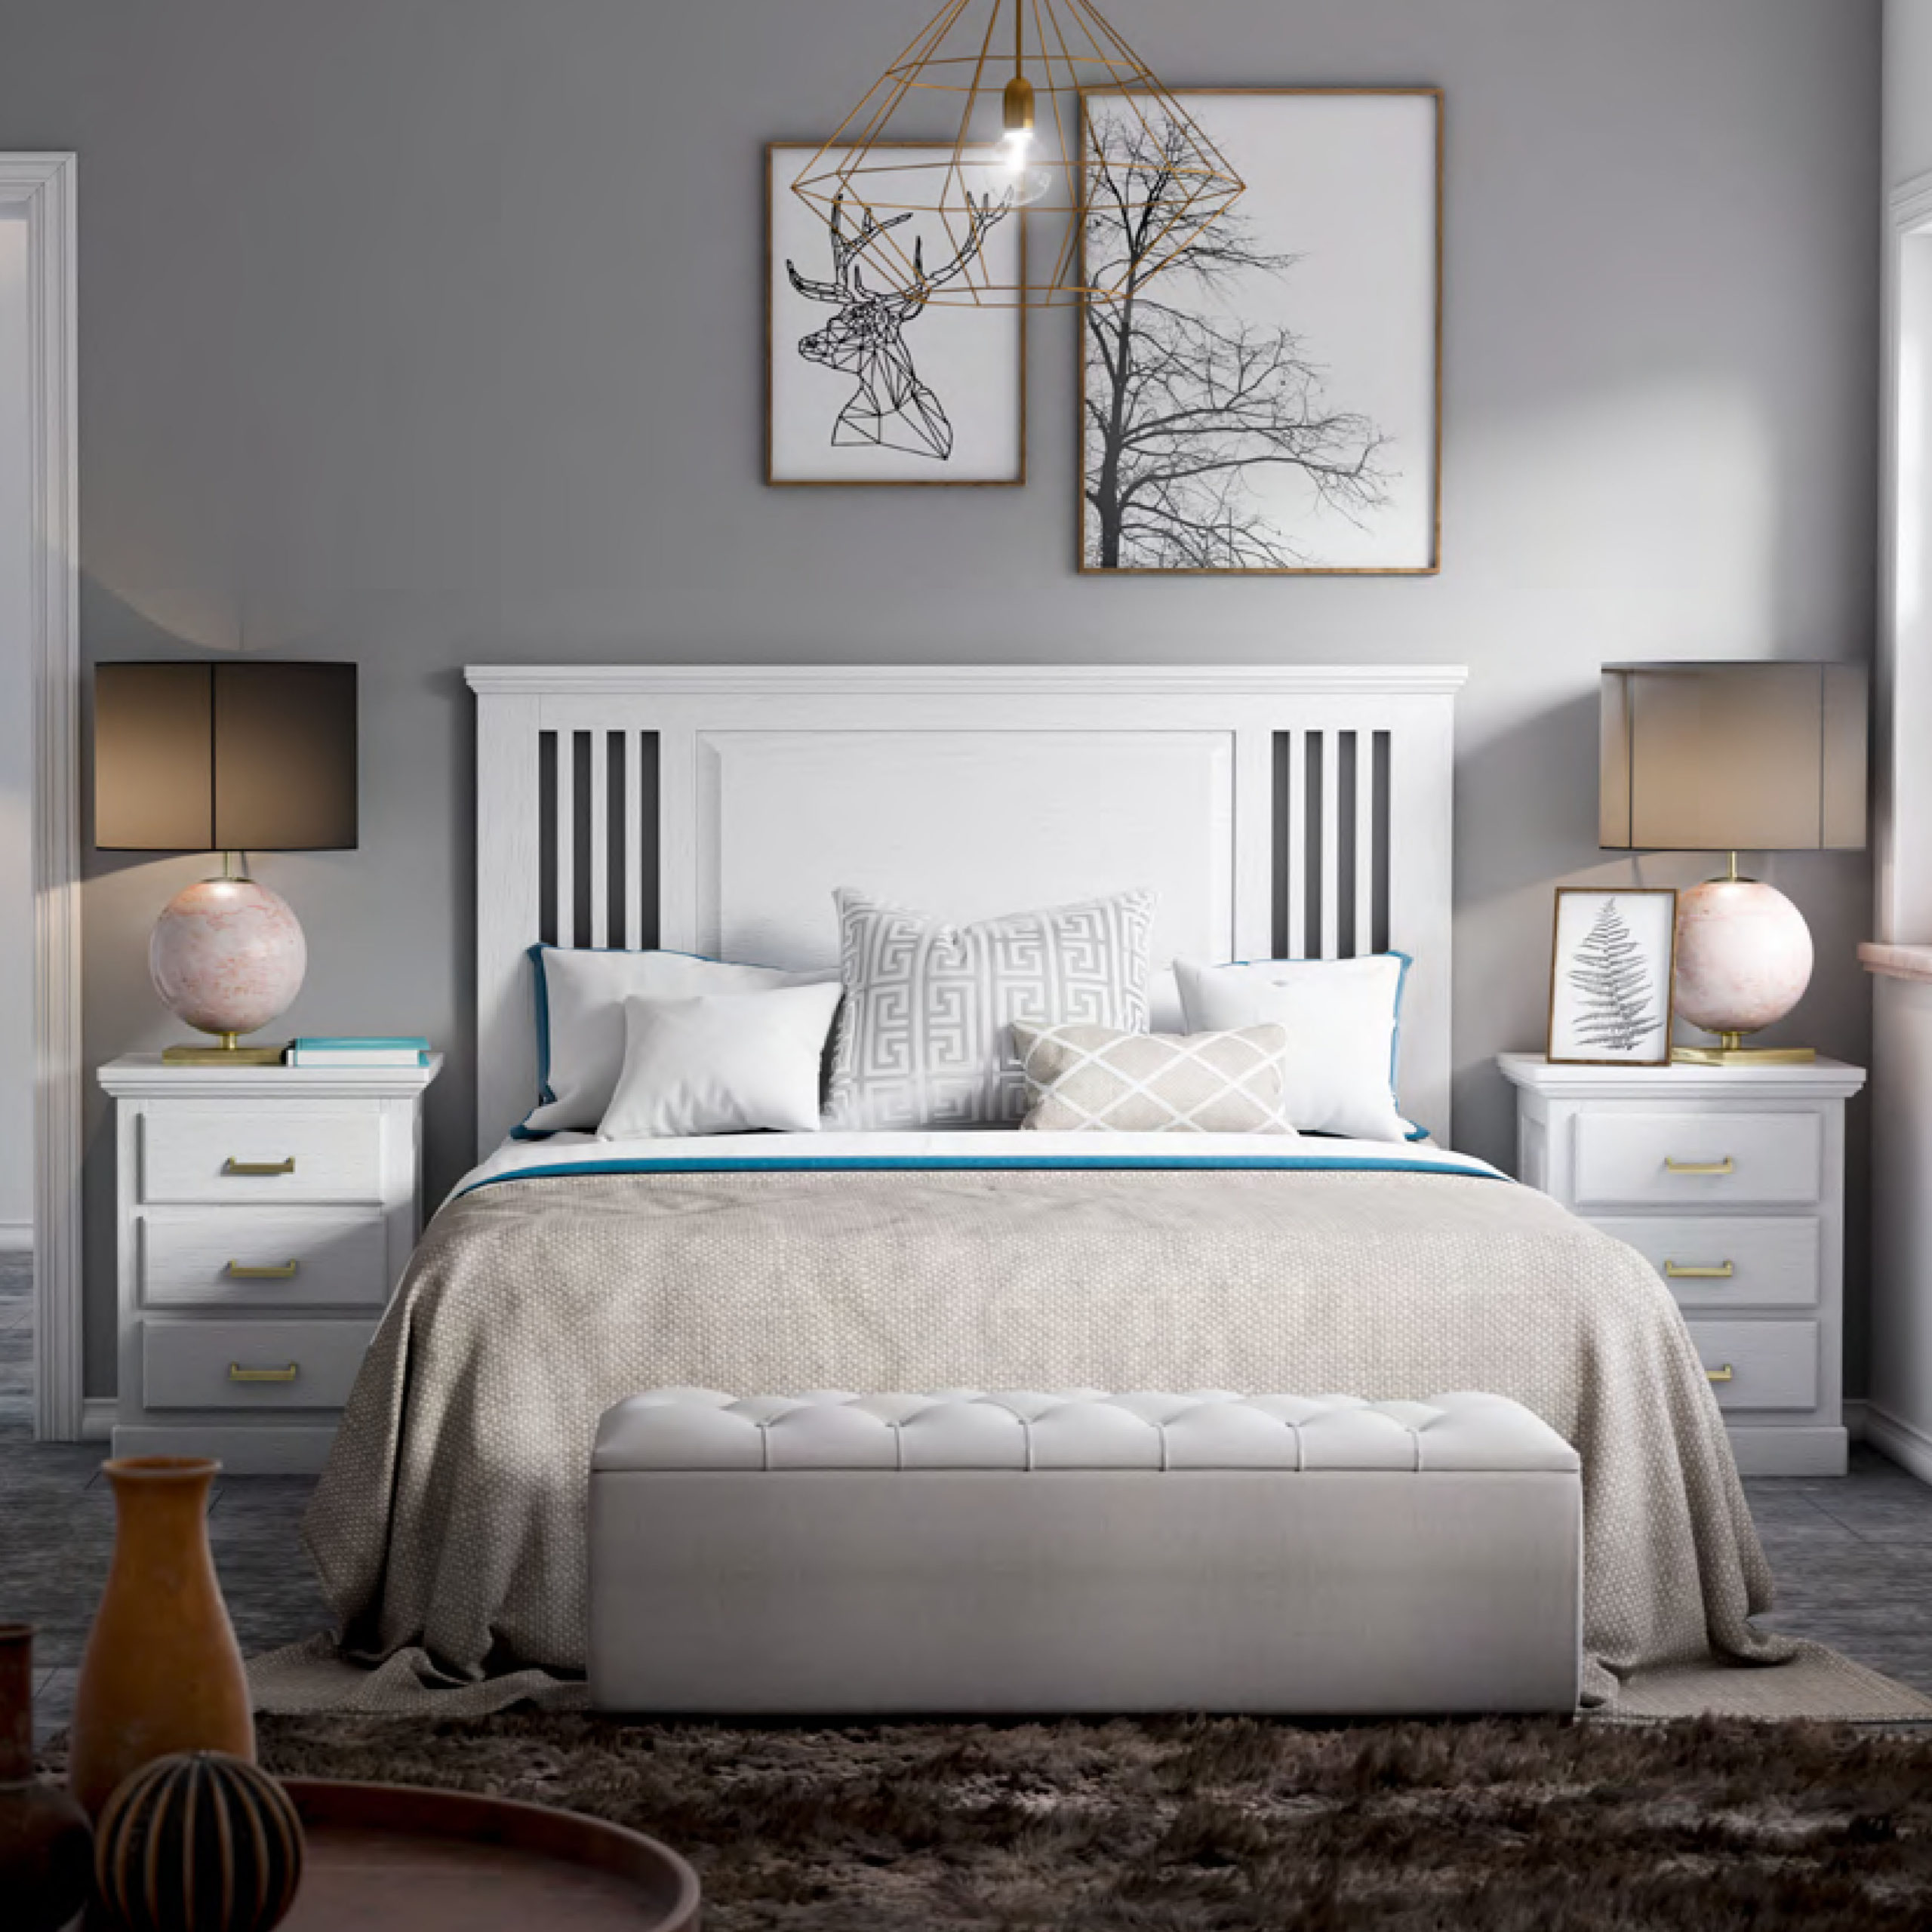 Cabecero de cama 2 mesitas color blanco y vintage dormitorio matrimonio  estilo moderno nordico cabezal para